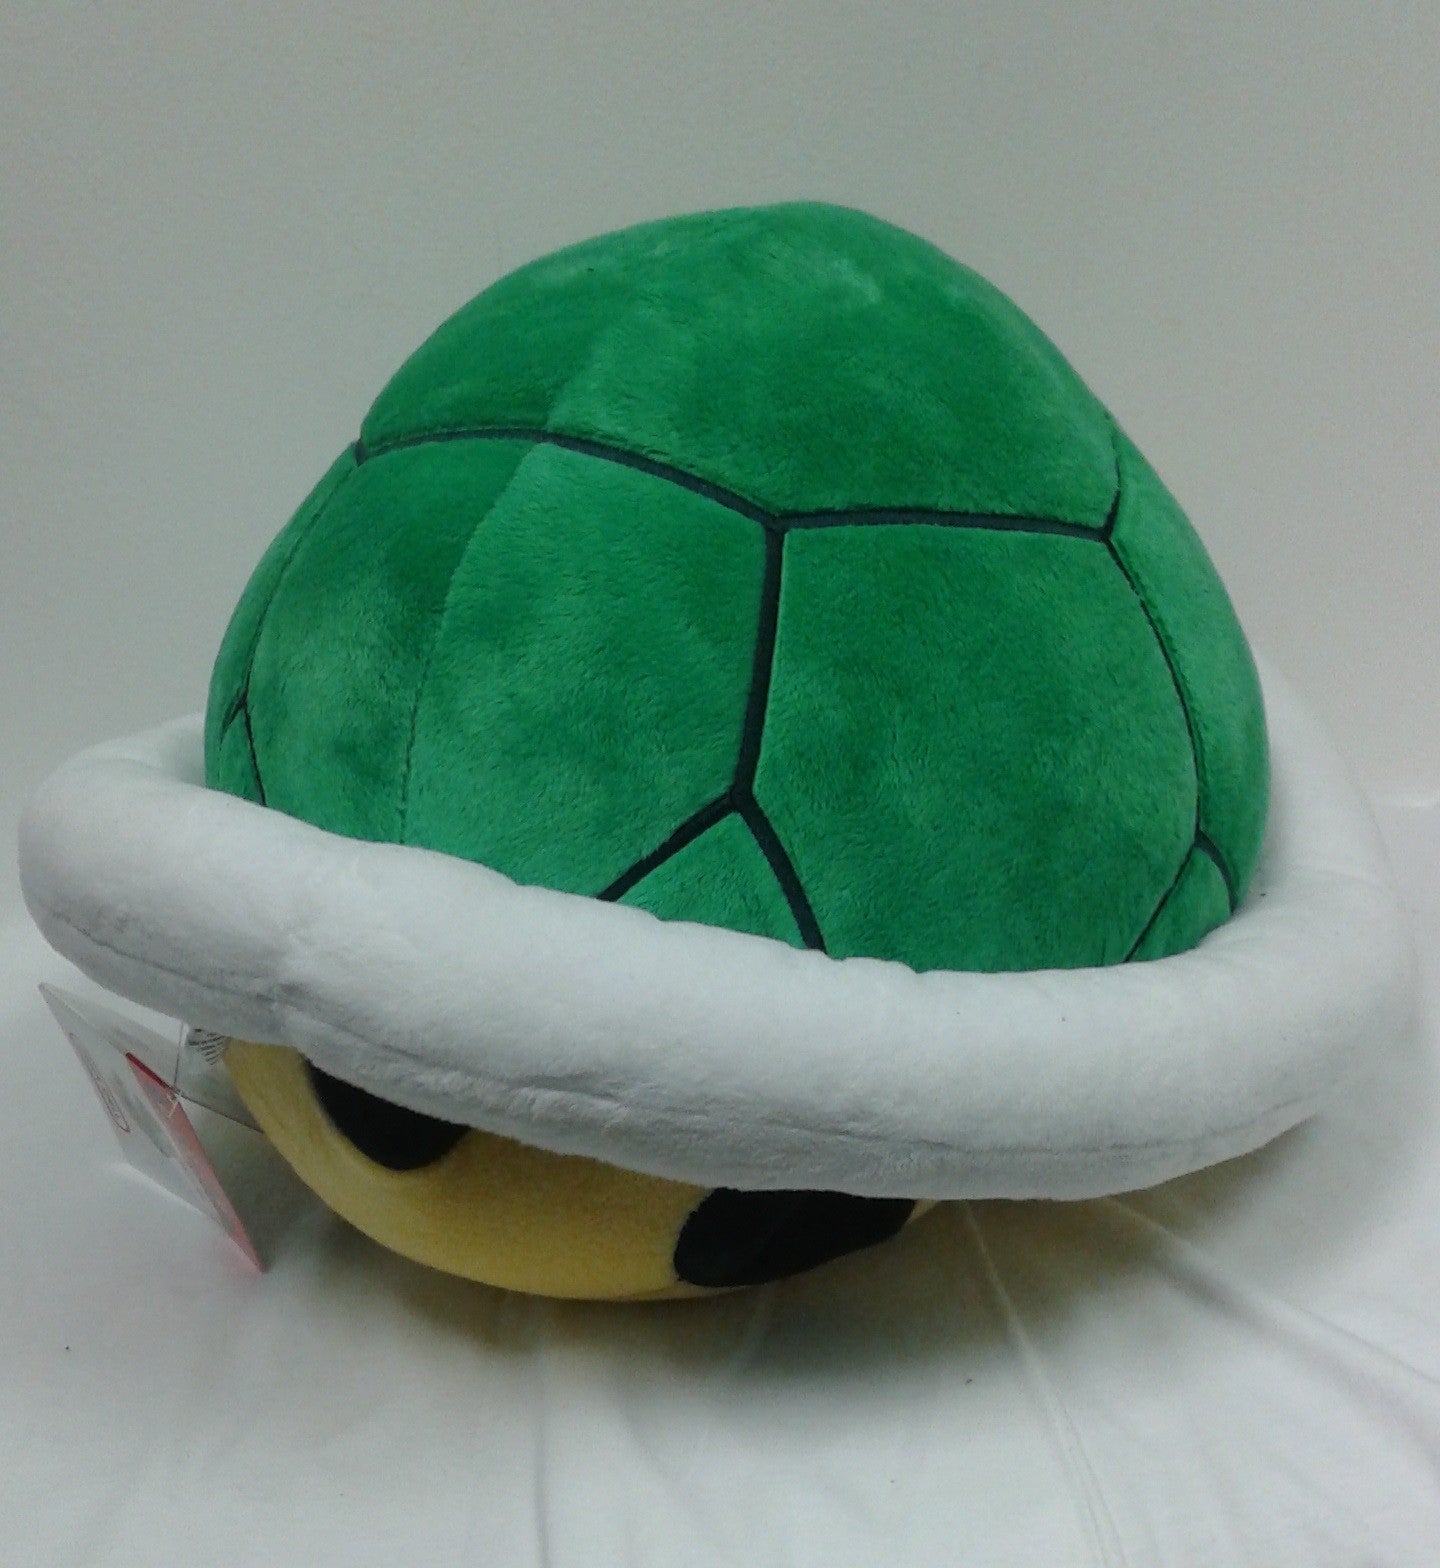 Super Mario Bros.: Green Shell Pillow